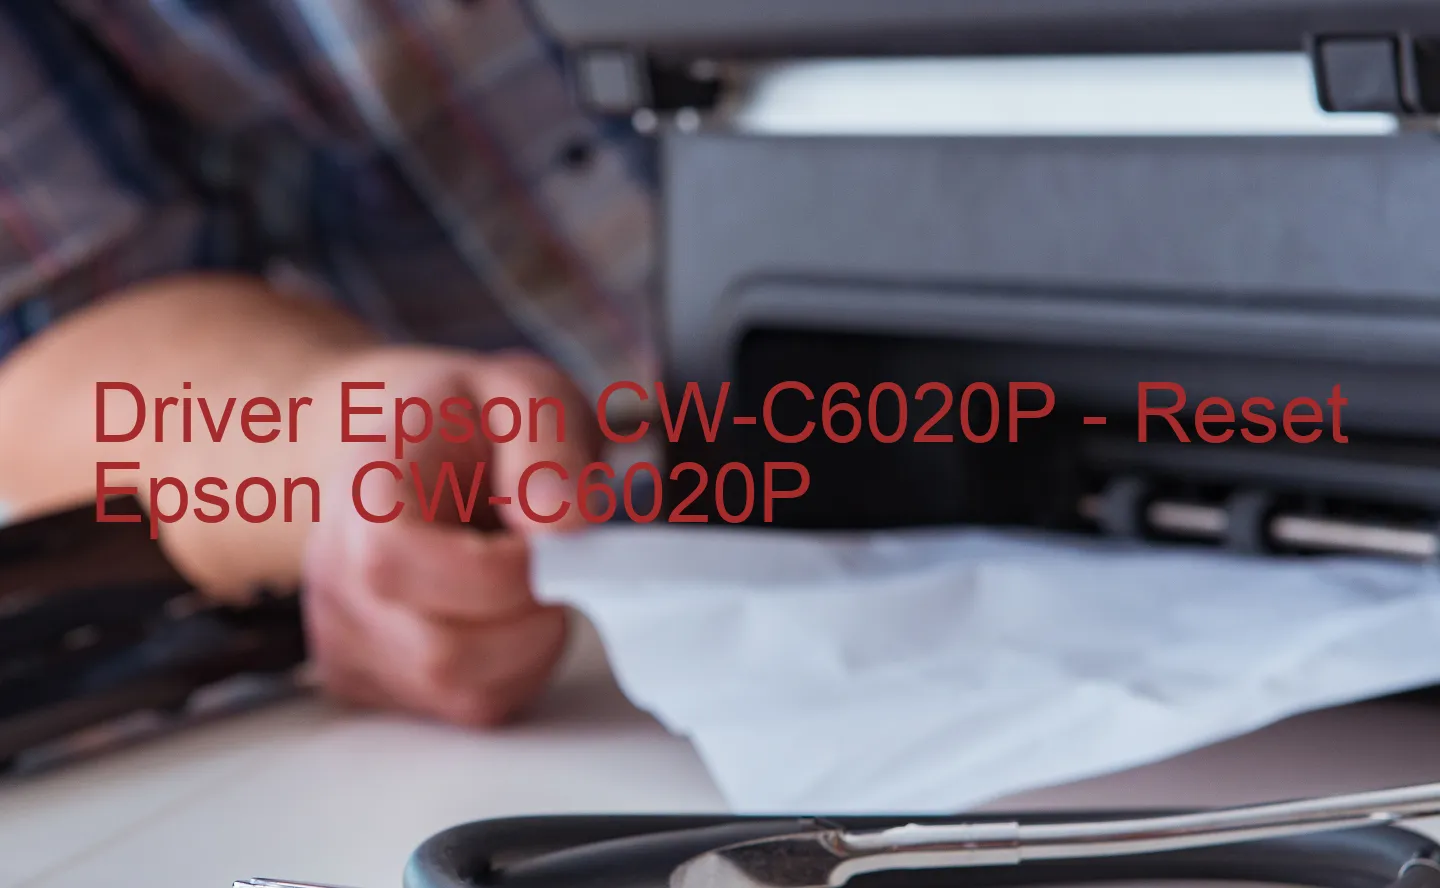 Epson CW-C6020Pのドライバー、Epson CW-C6020Pのリセットソフトウェア